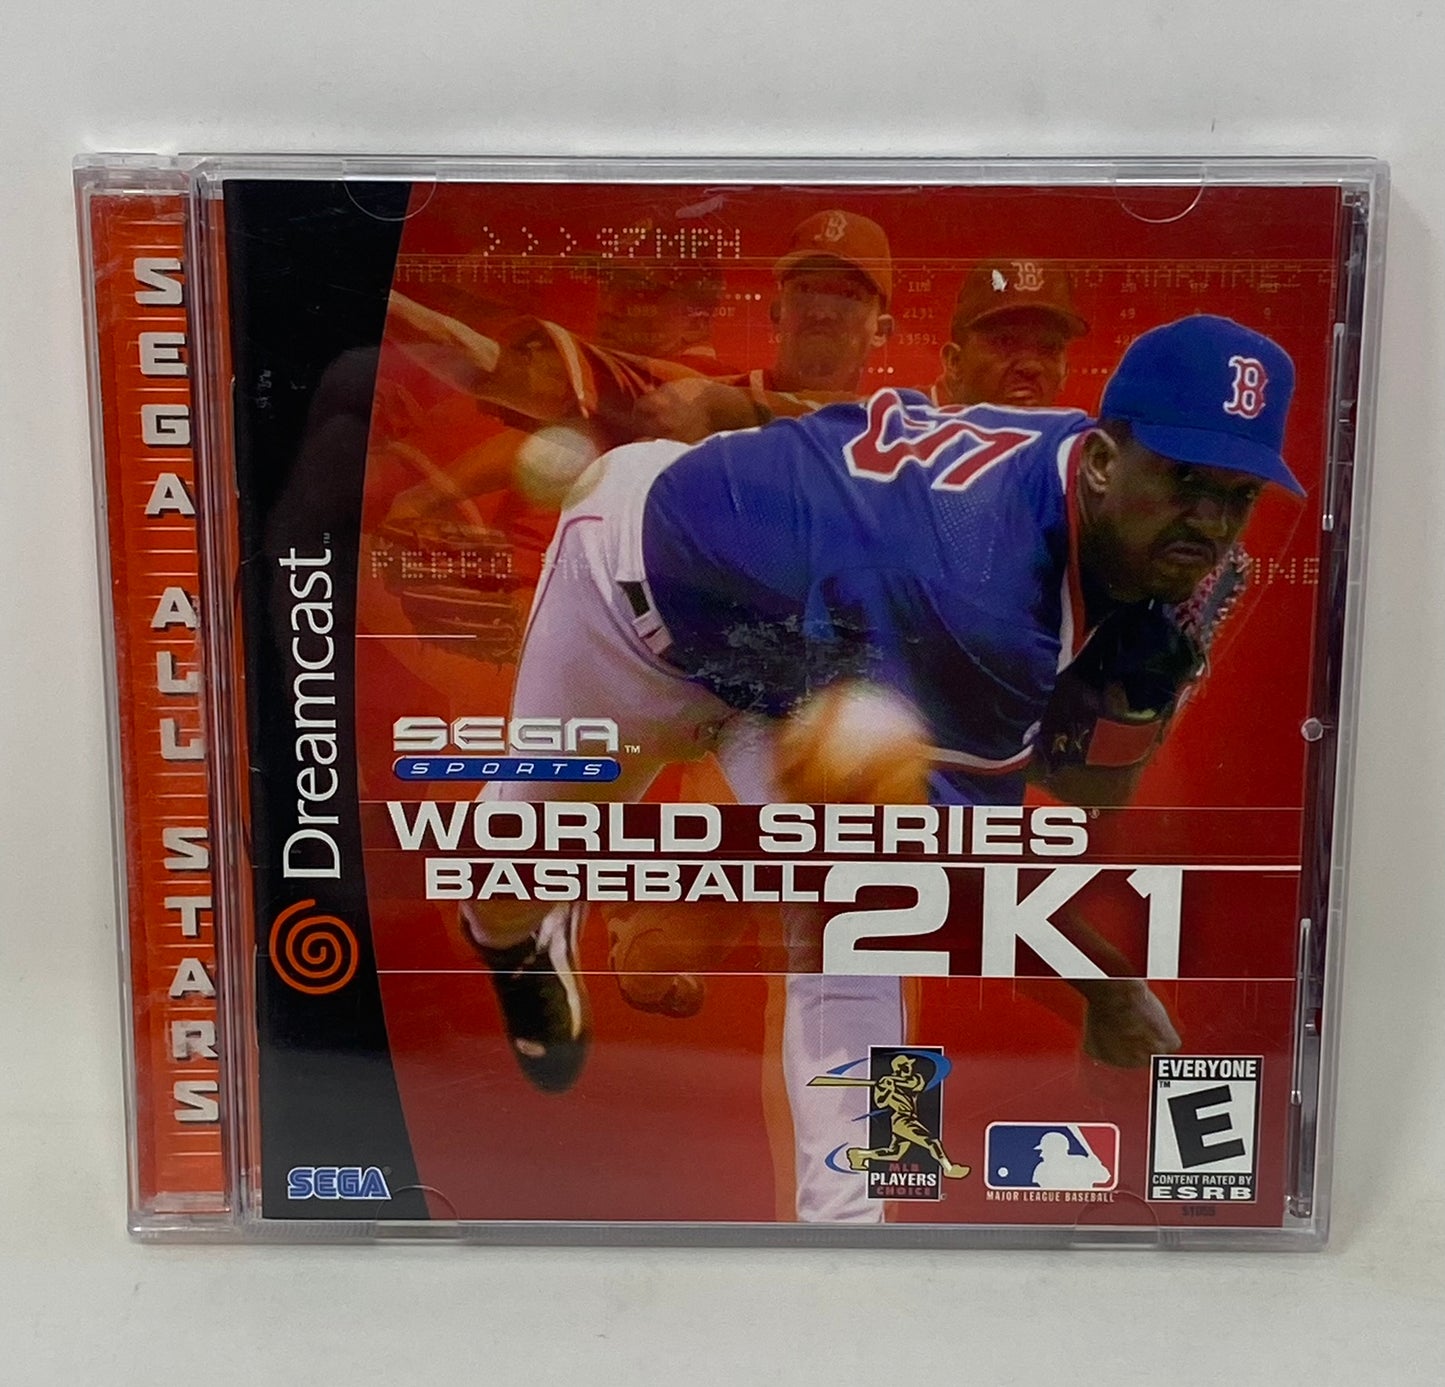 Sega Dreamcast - World Series Baseball 2K1 (Sega All Stars)